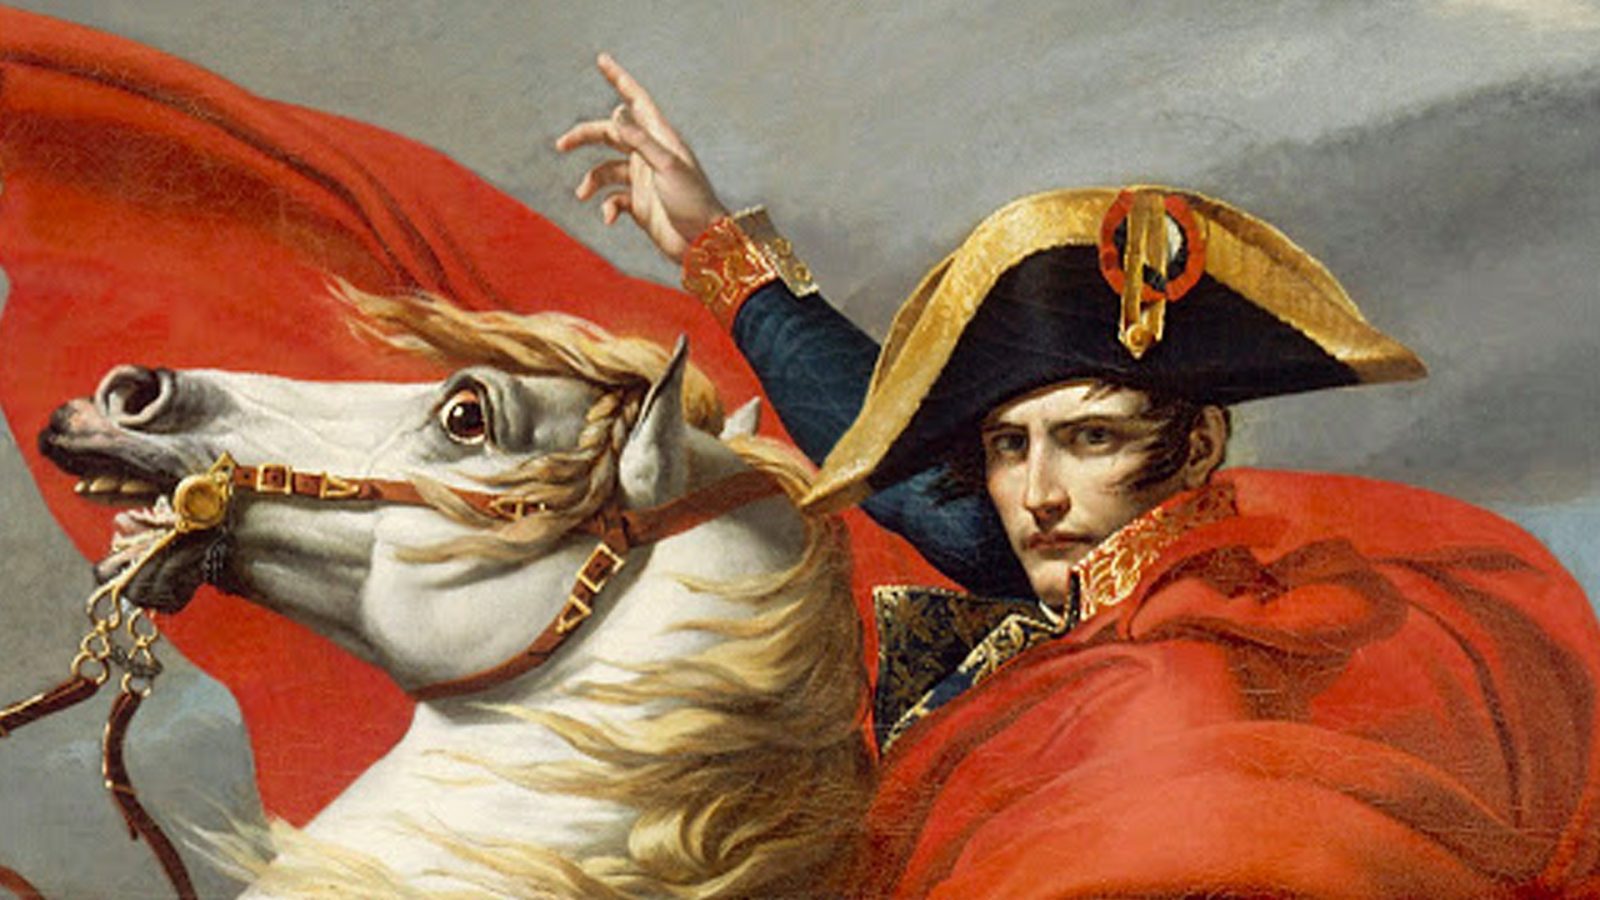 Napoleon film kitbag